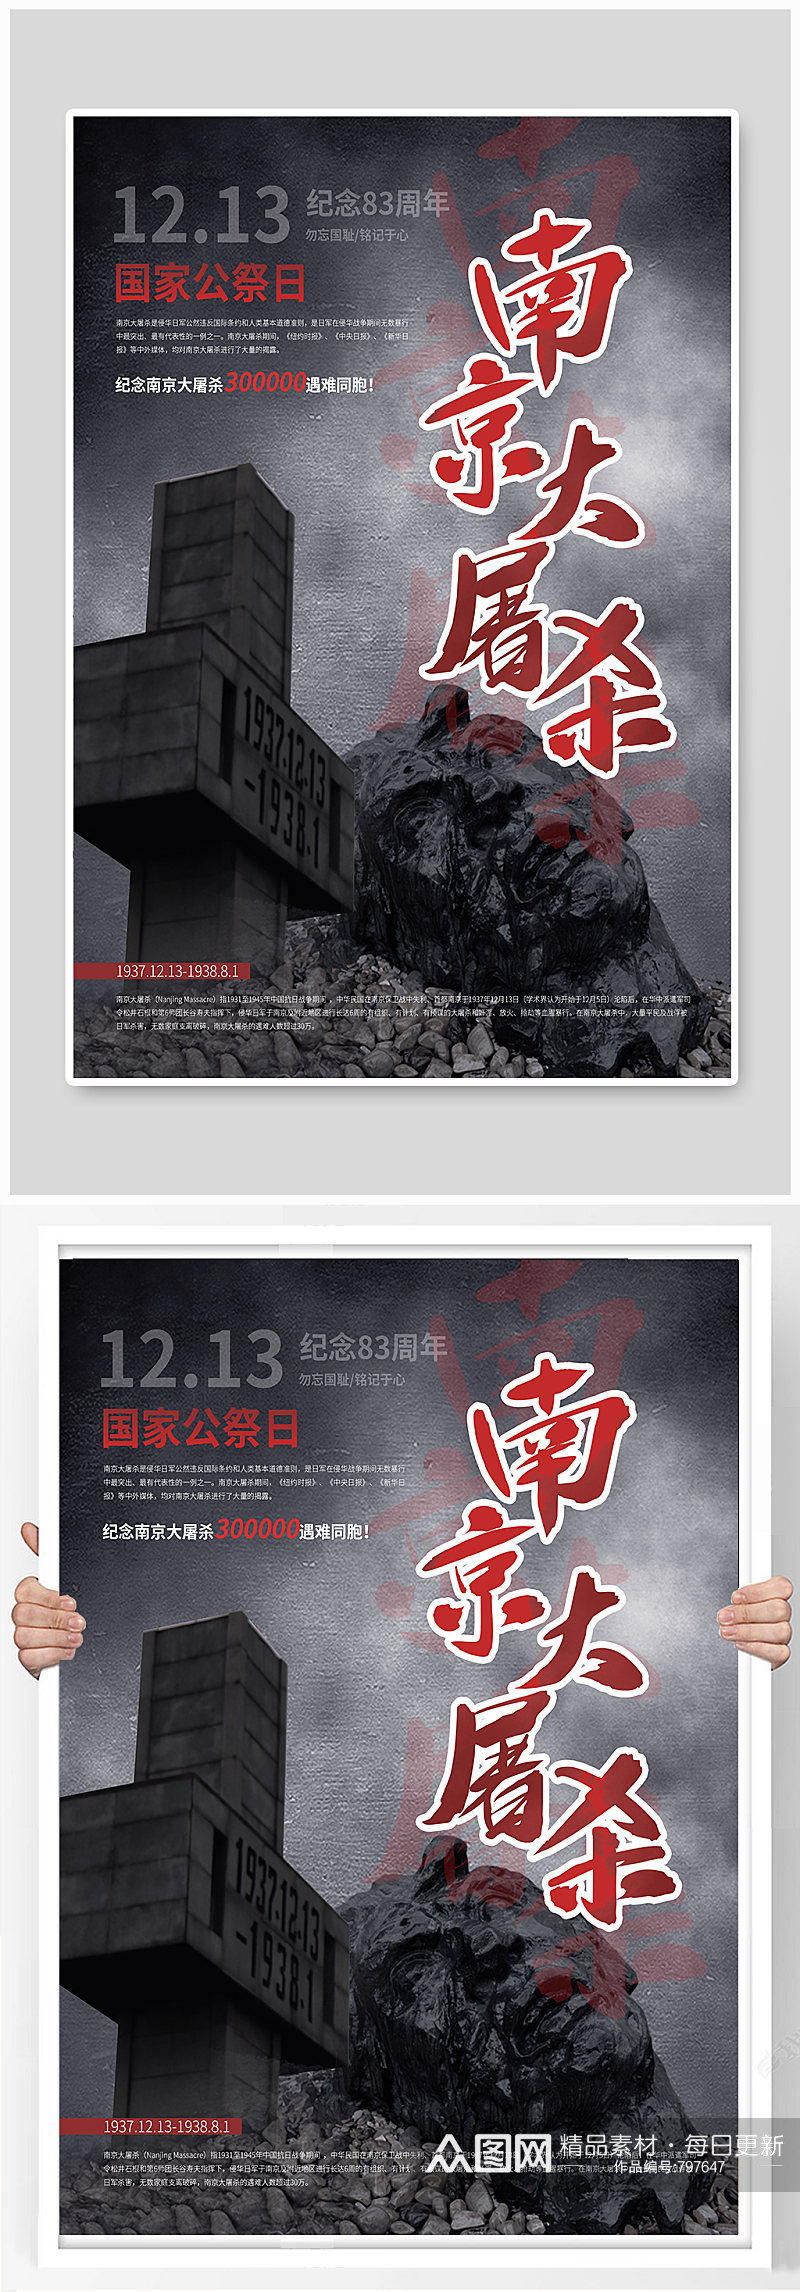 南京大屠杀83周年纪念海报素材